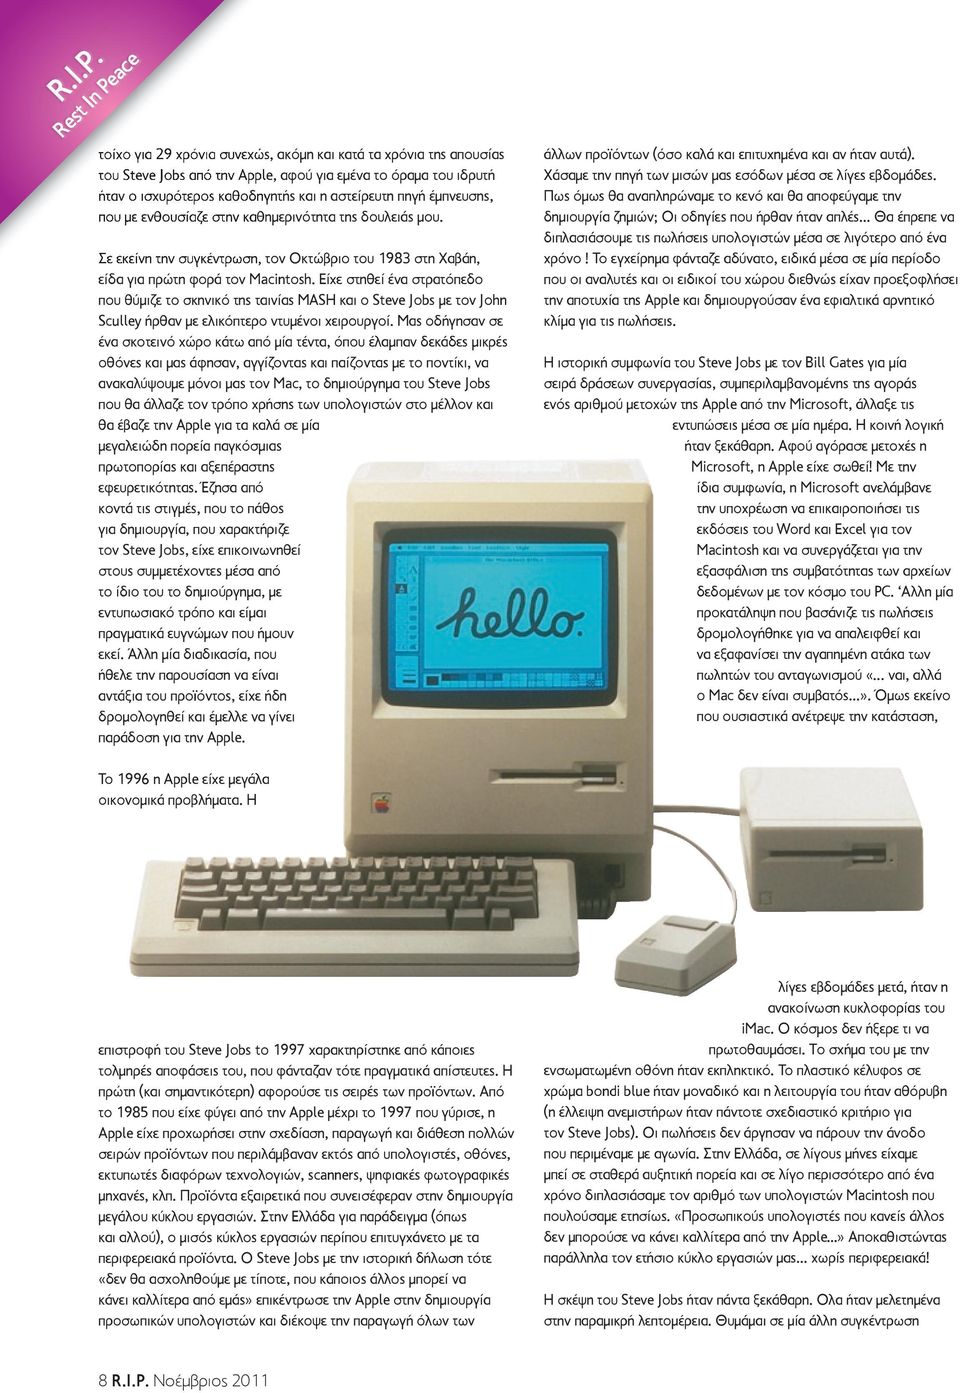 έμπνευσης, που με ενθουσίαζε στην καθημερινότητα της δουλειάς μου. Σε εκείνη την συγκέντρωση, τον Οκτώβριο του 1983 στη Χαβάη, είδα για πρώτη φορά τον Macintosh.